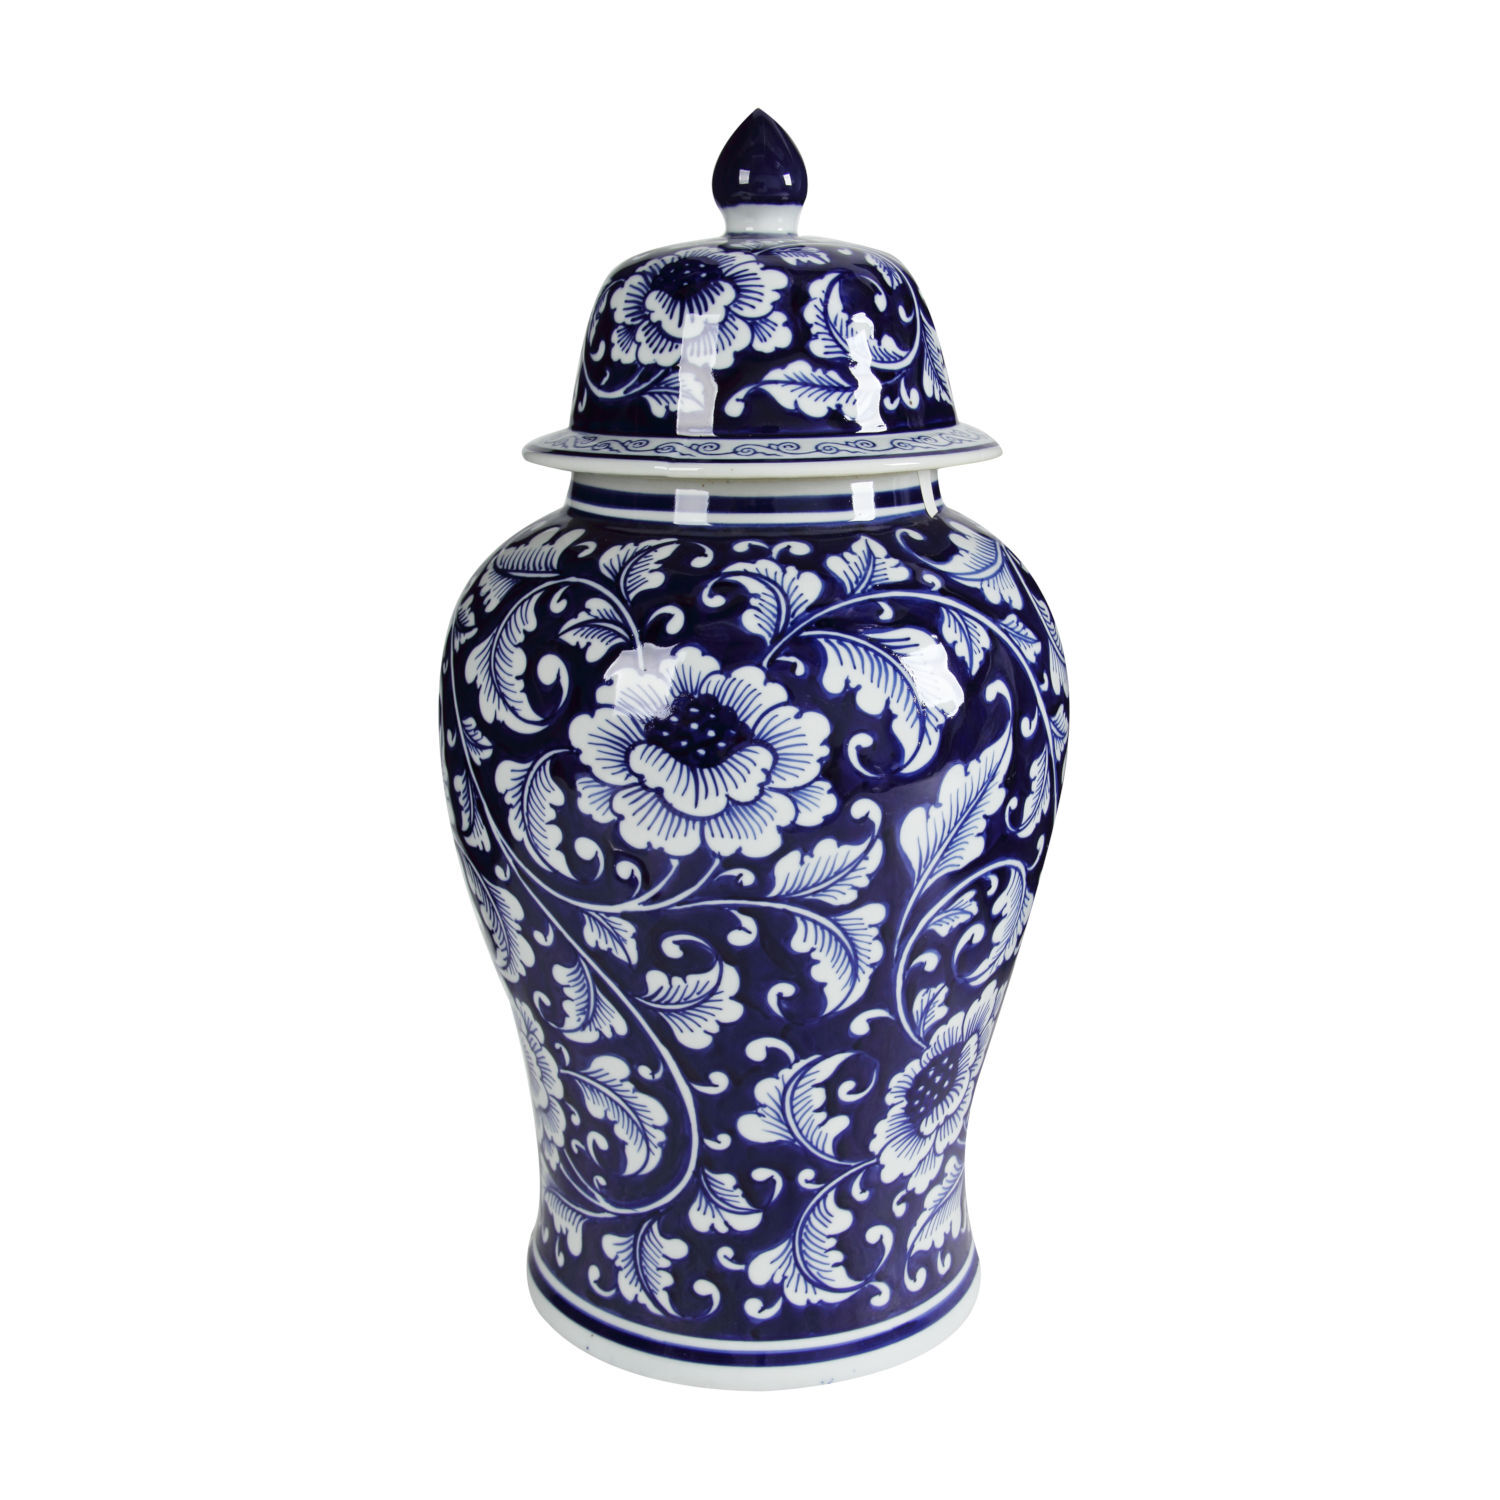 AV69769 Aline Blue & White Porcelain Jar w/ Lid 6x8" 